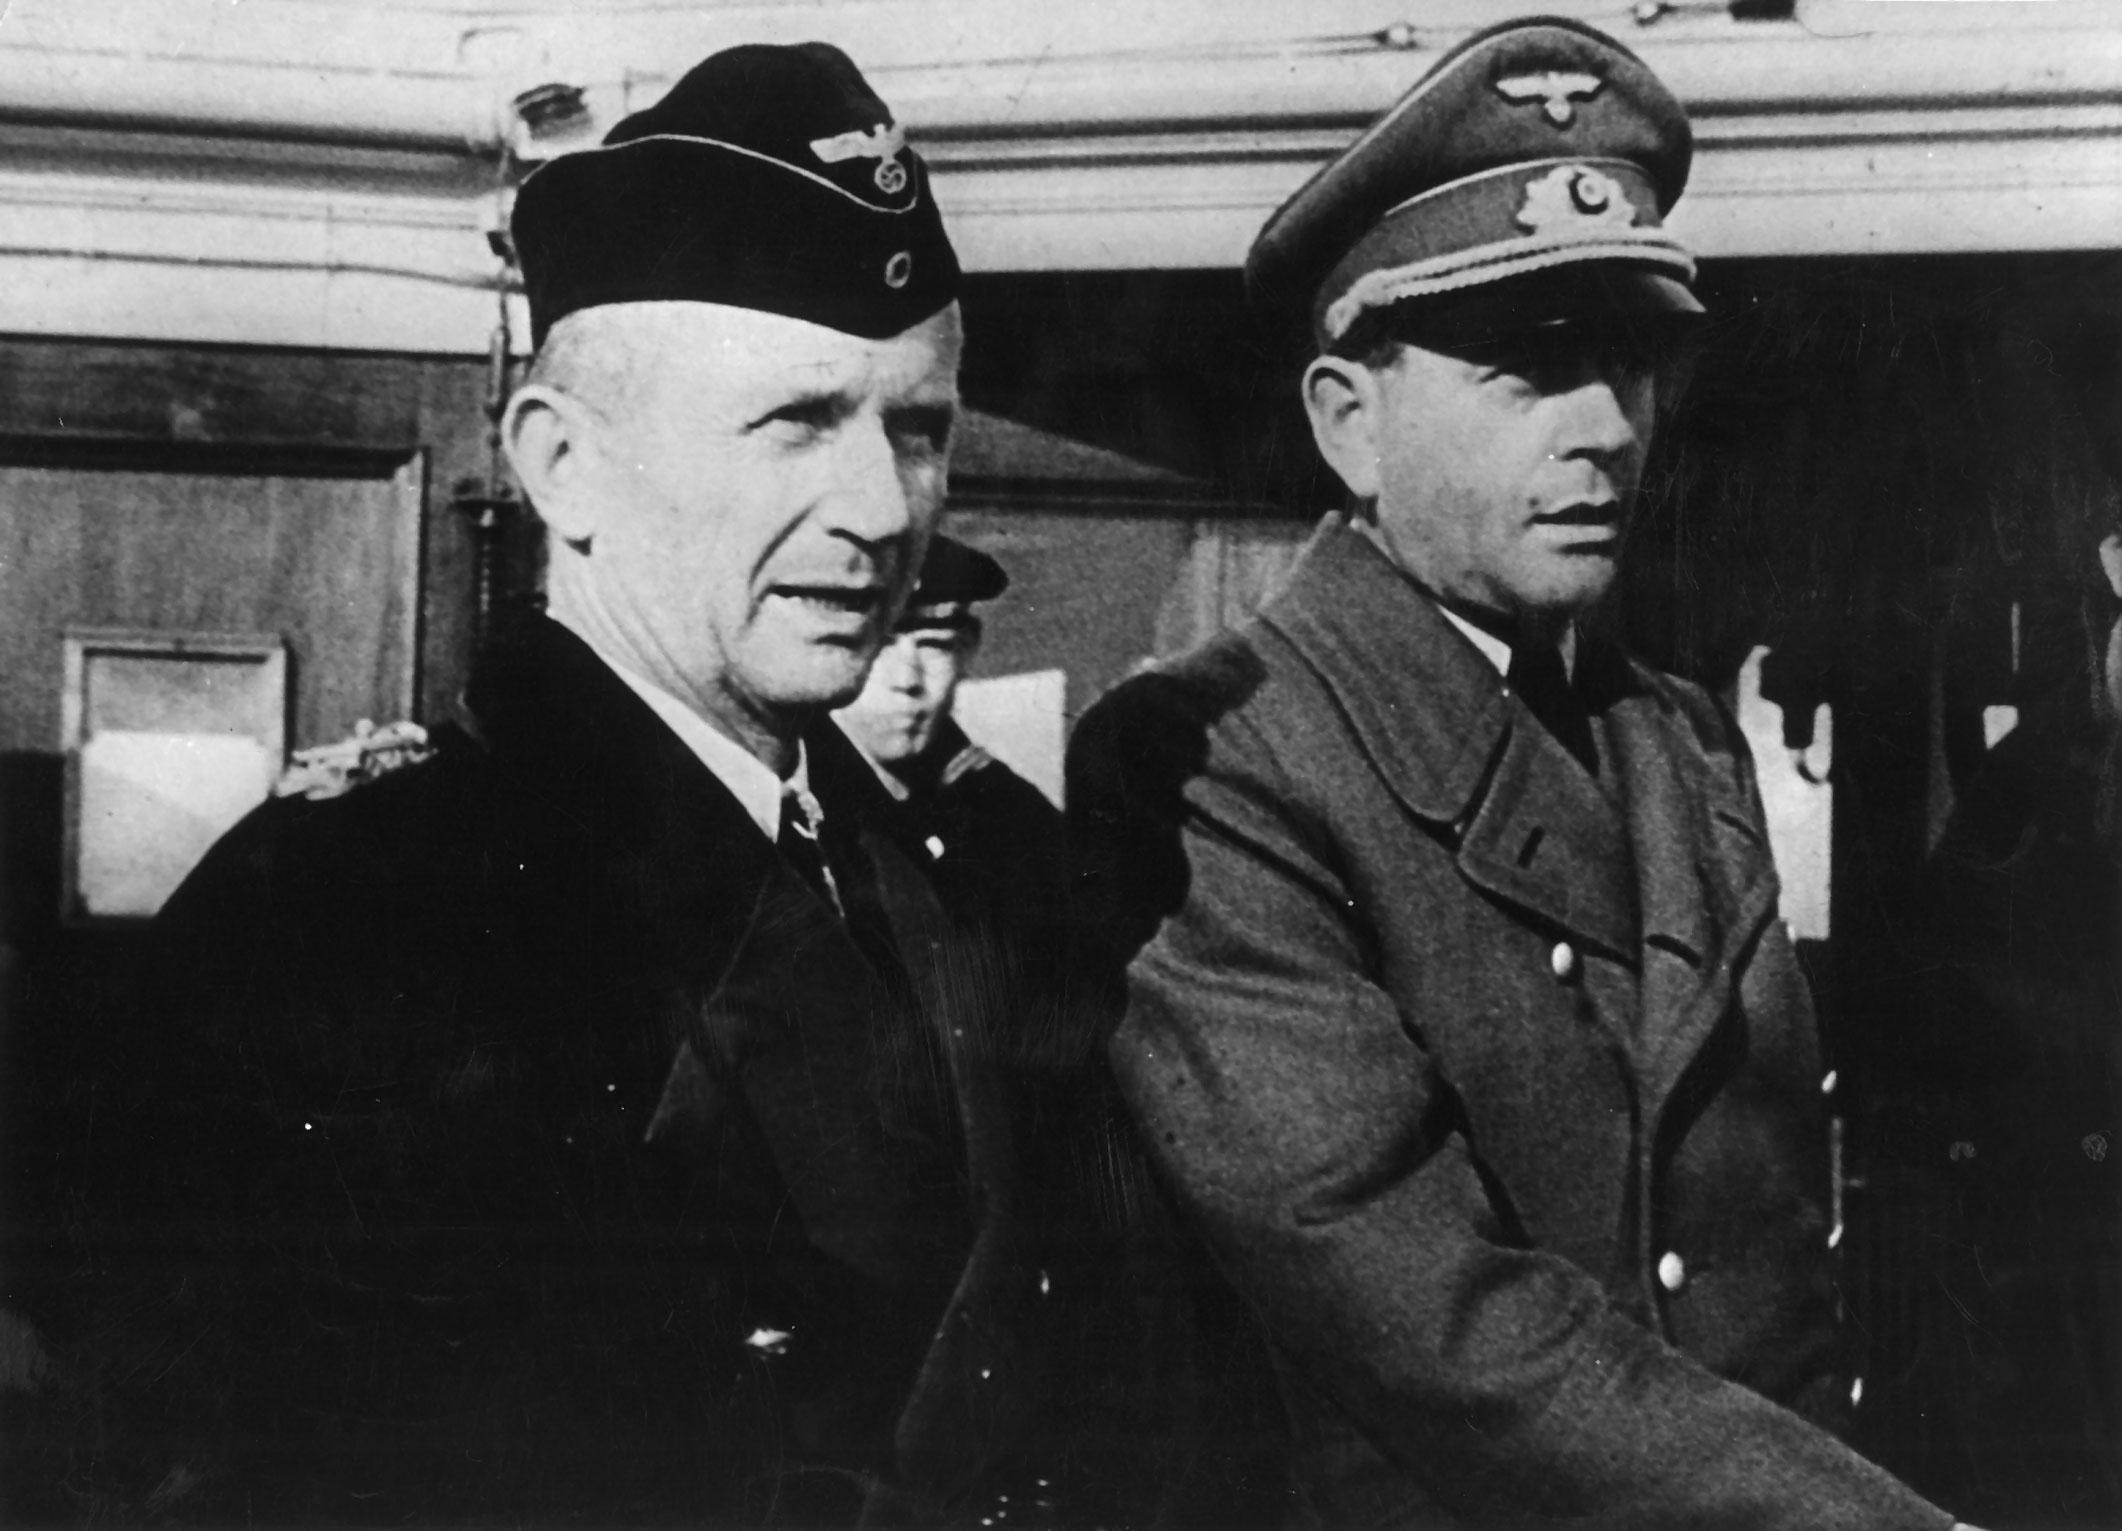 Schwarz-Weiß-Fotografie von zwei Männern in nationalsozialistischen Uniformen